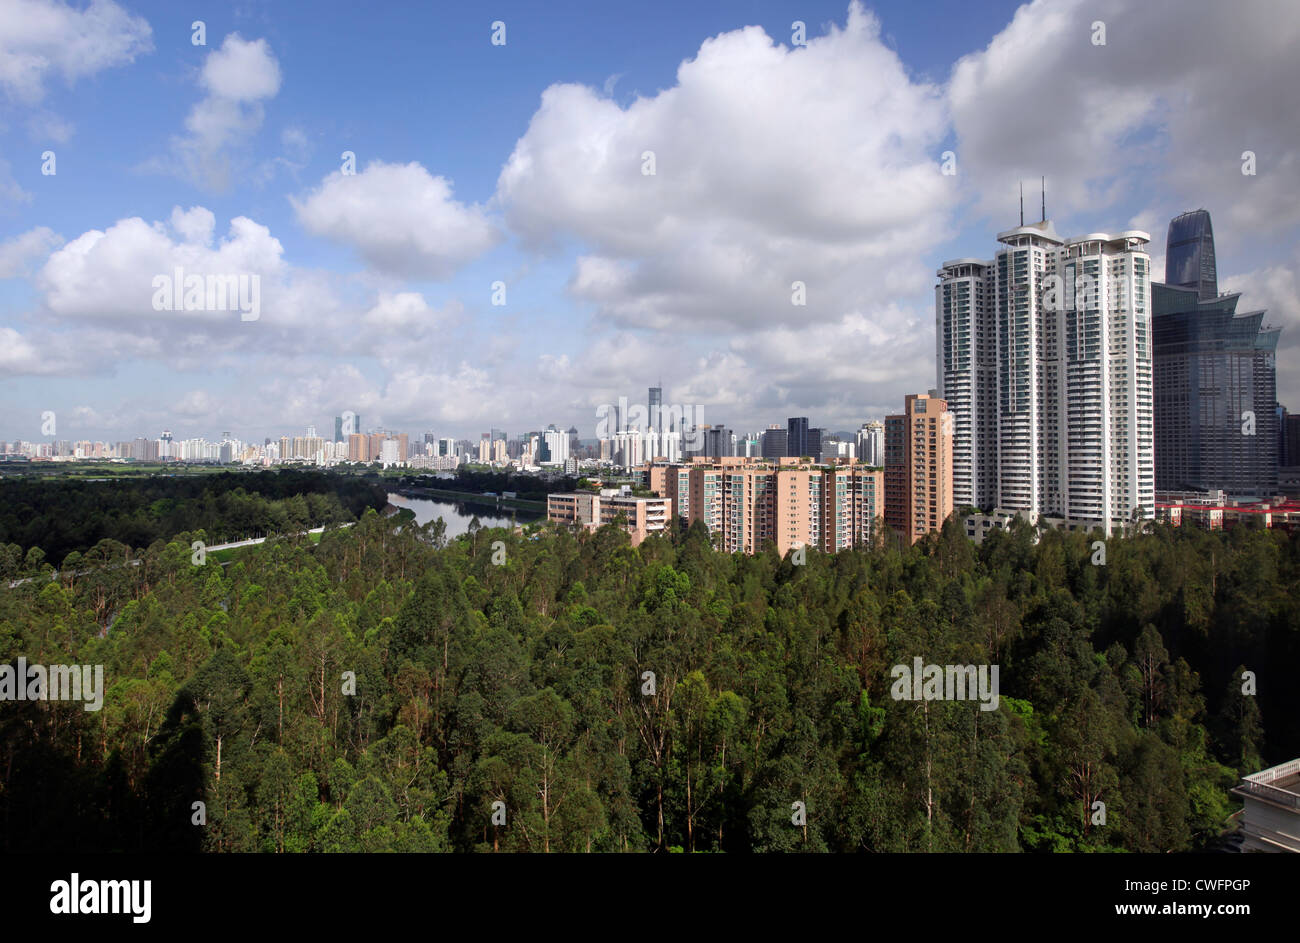 Shenzhen skyline, China Stock Photo